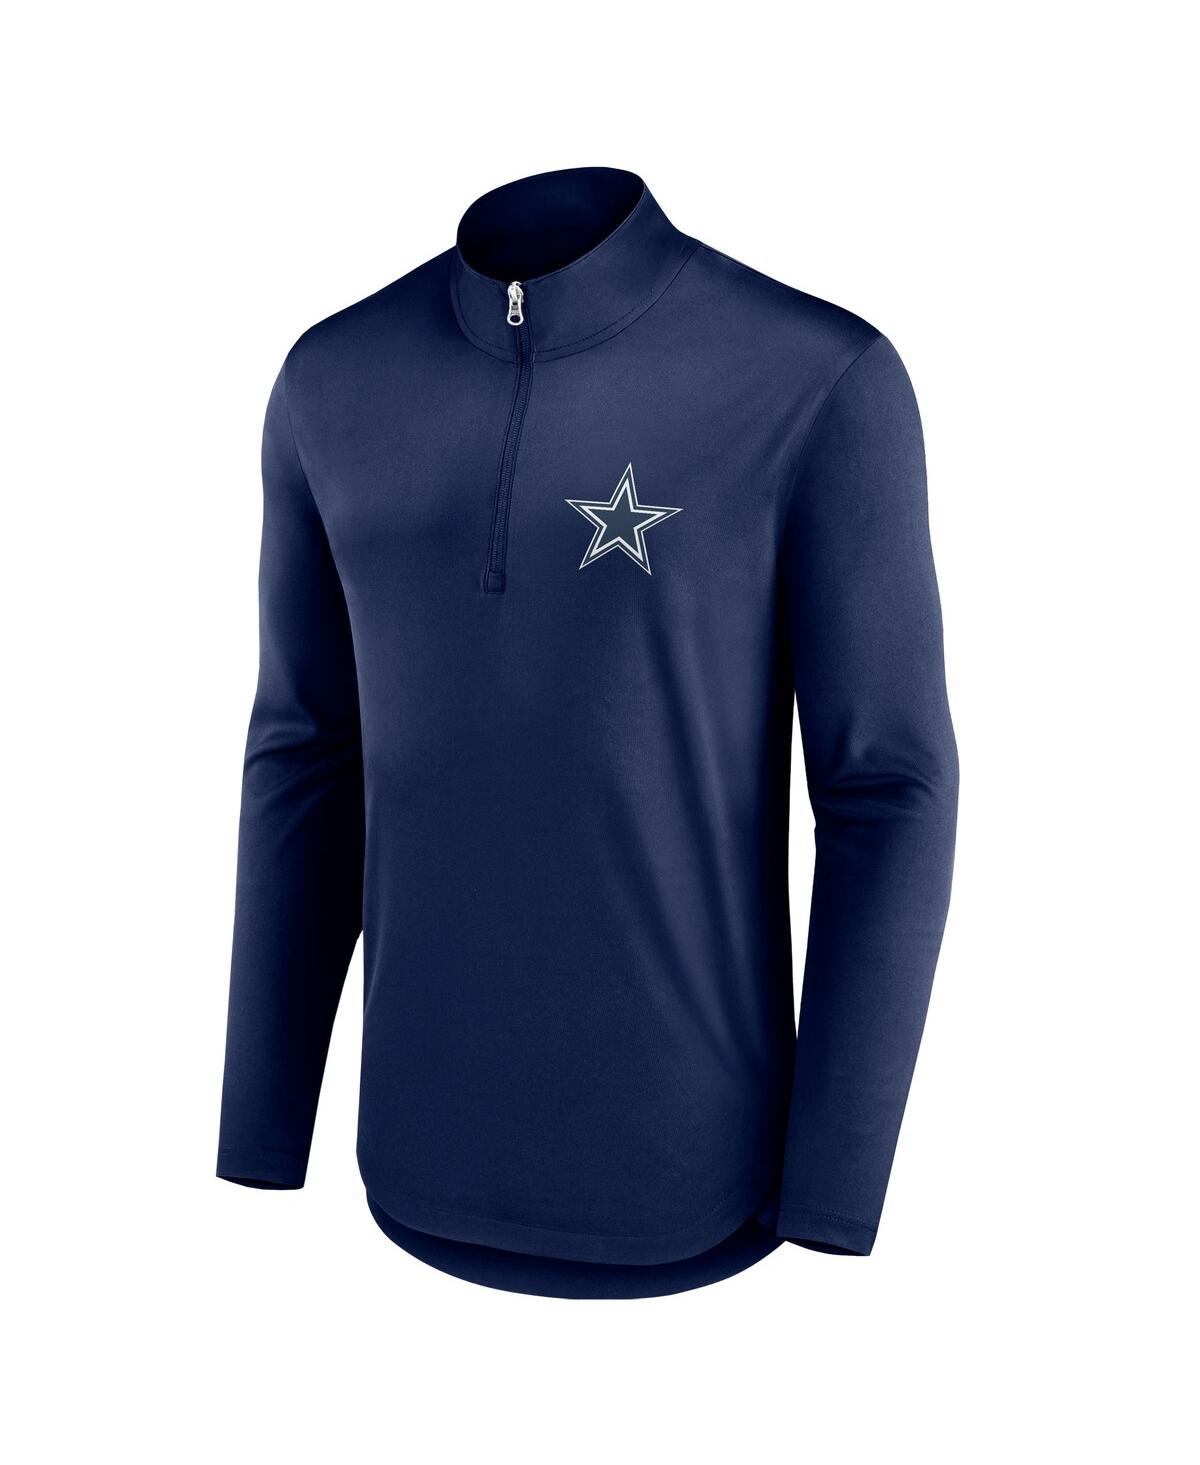 Shop Fanatics Men's  Navy Dallas Cowboys Quarterback Quarter-zip Top